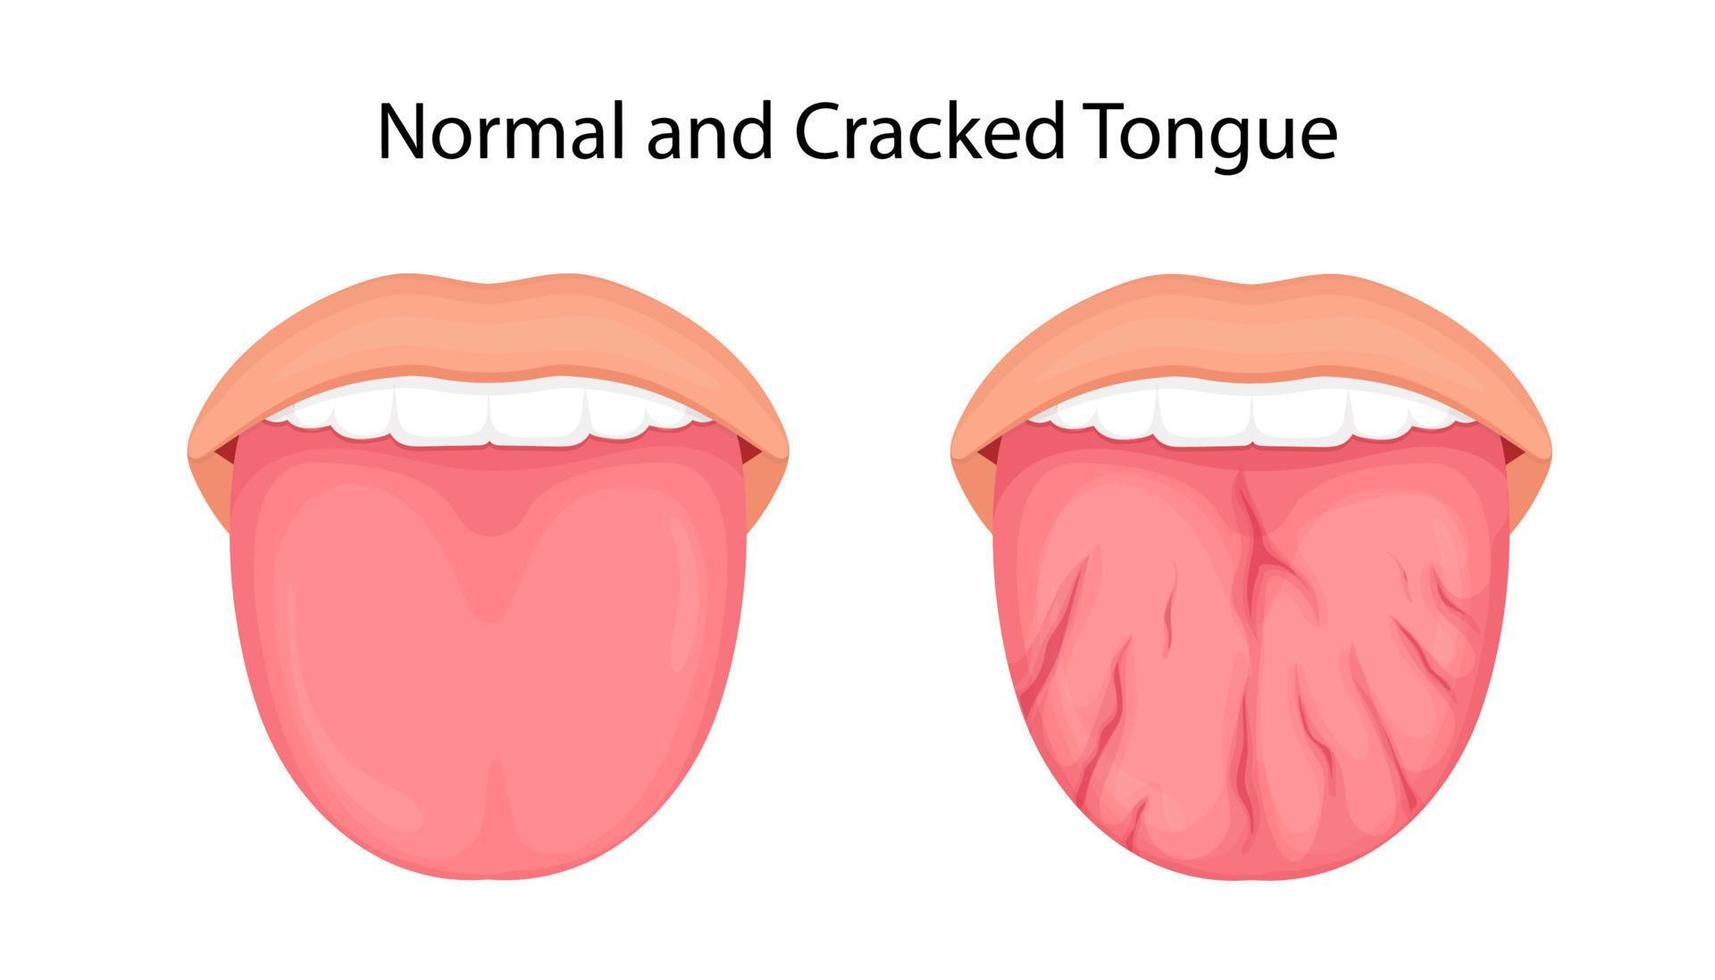 Krankheit der Zunge, Risse. medizinische Illustration. vektor